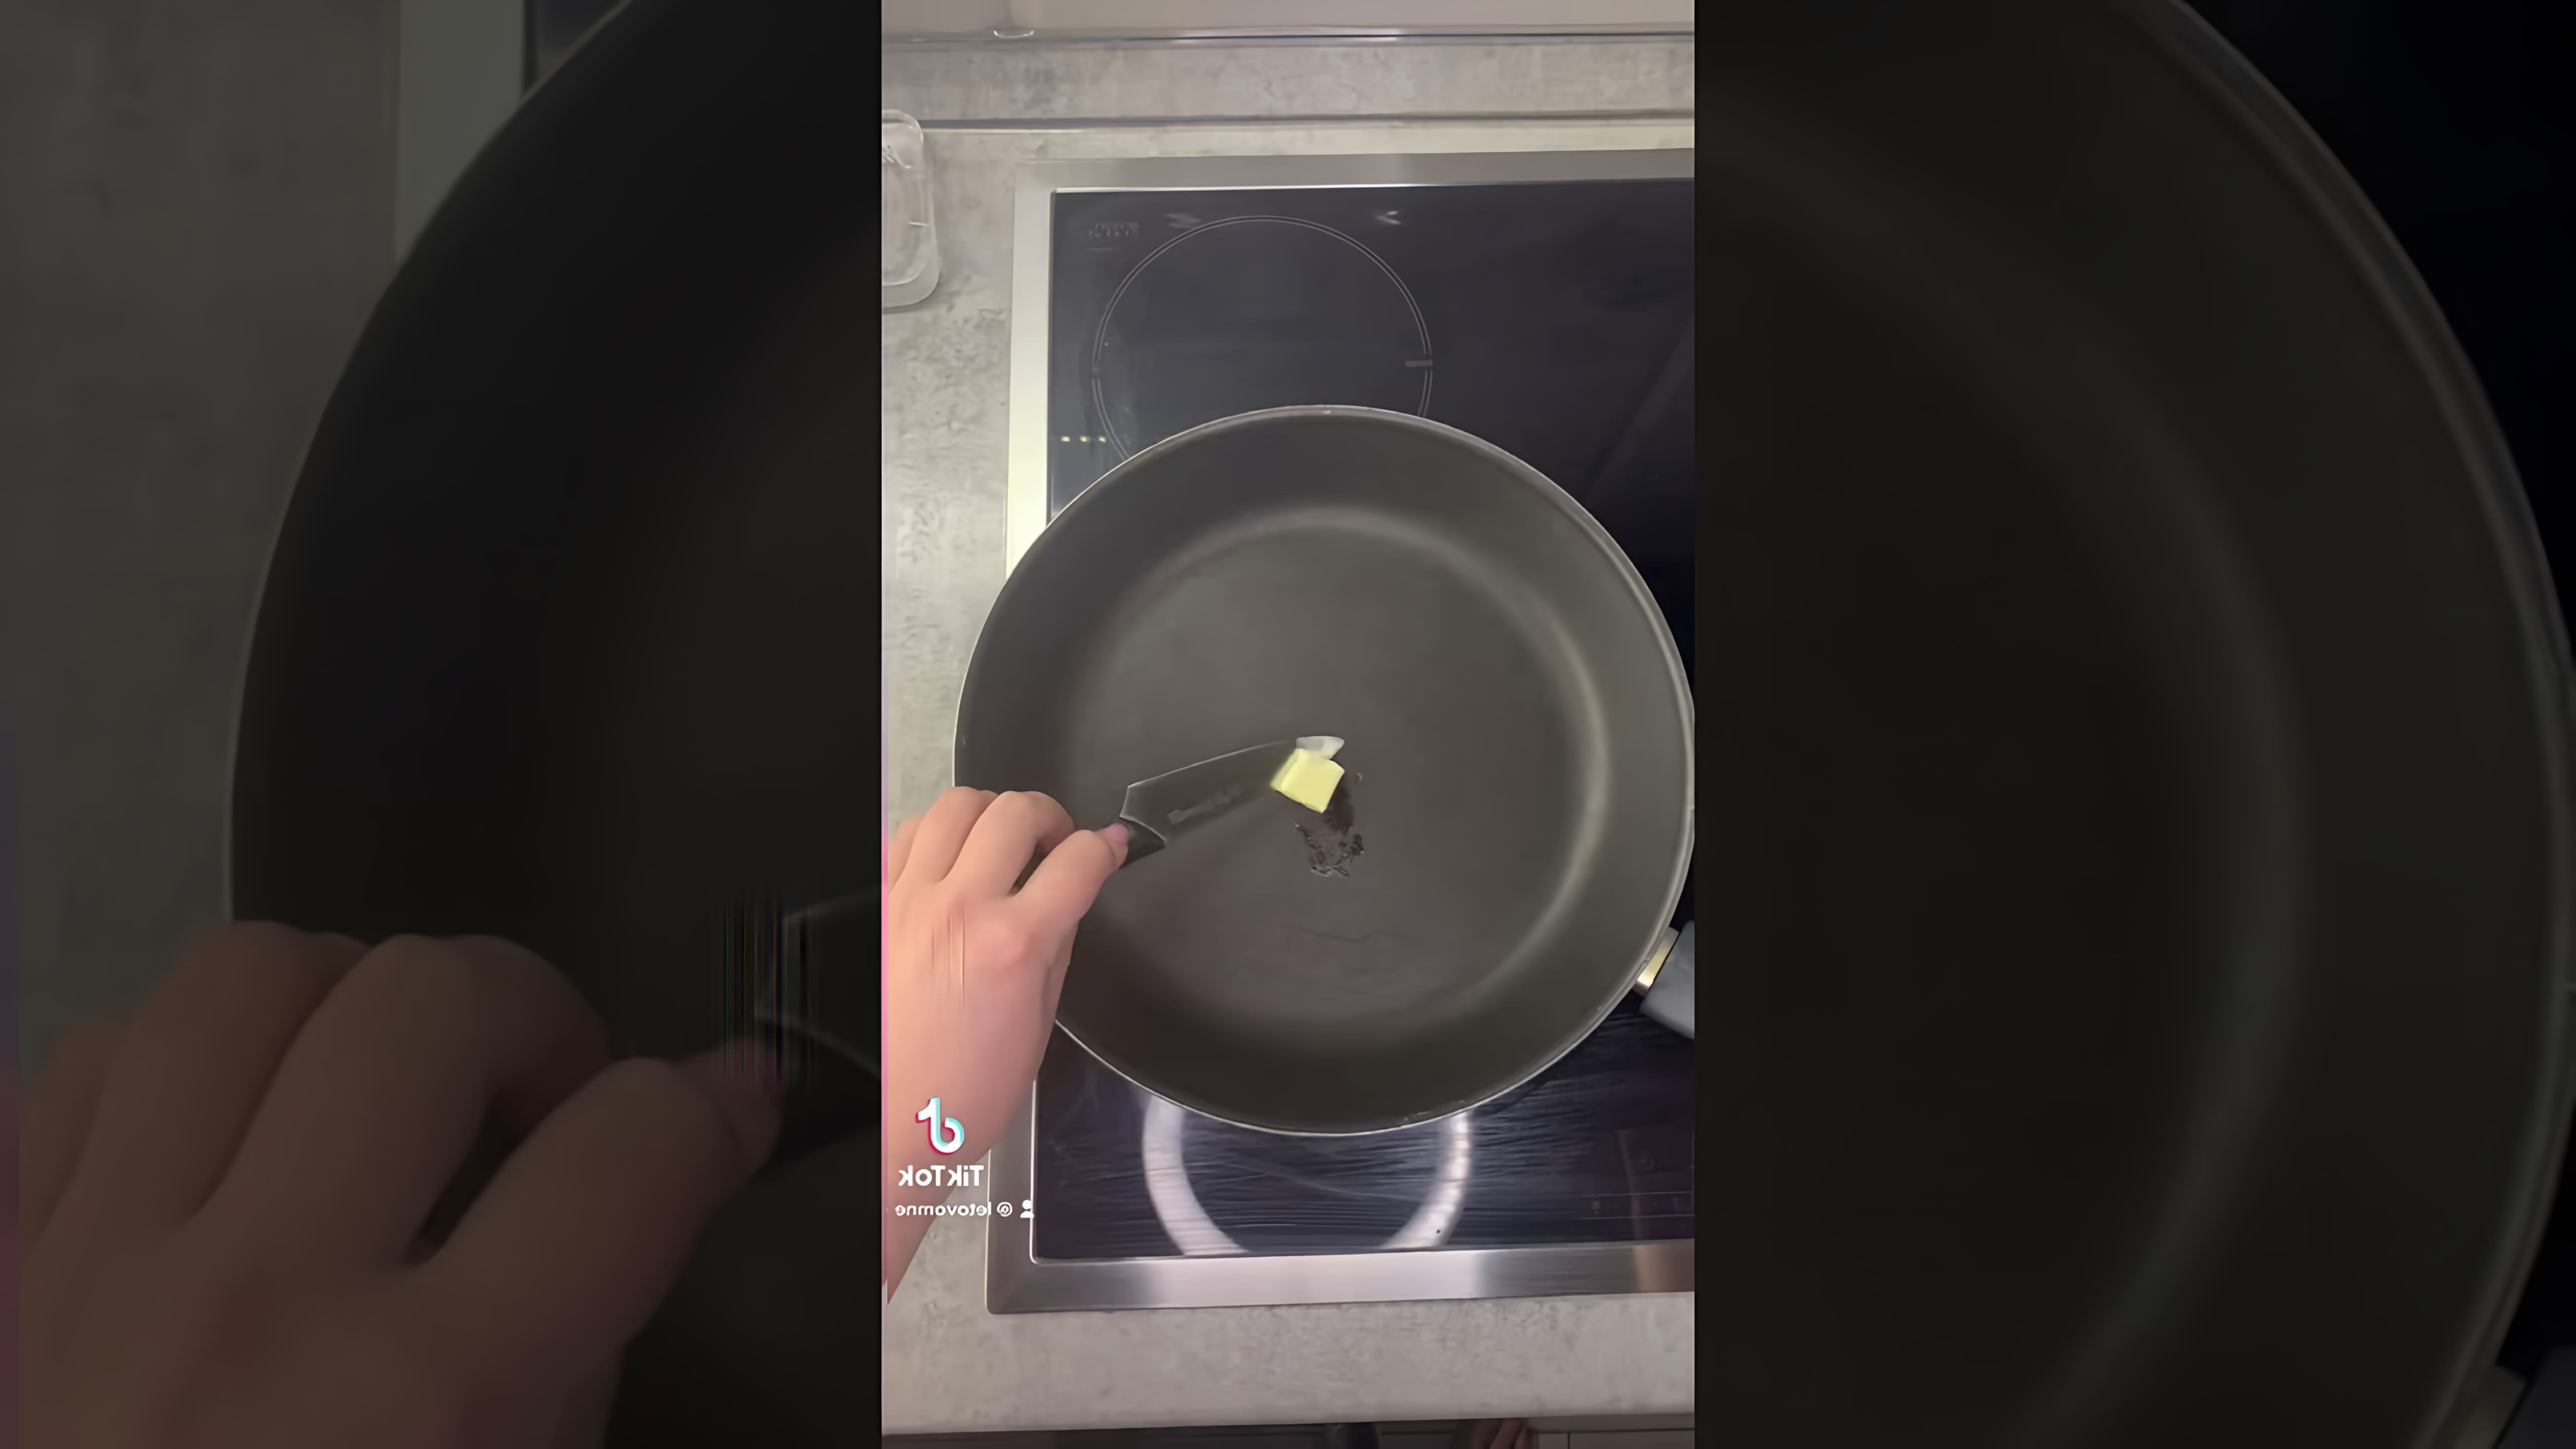 "Рецепт завтрака: Омлет с сыром и помидорами" - это видео-ролик, который показывает, как приготовить вкусный и питательный завтрак